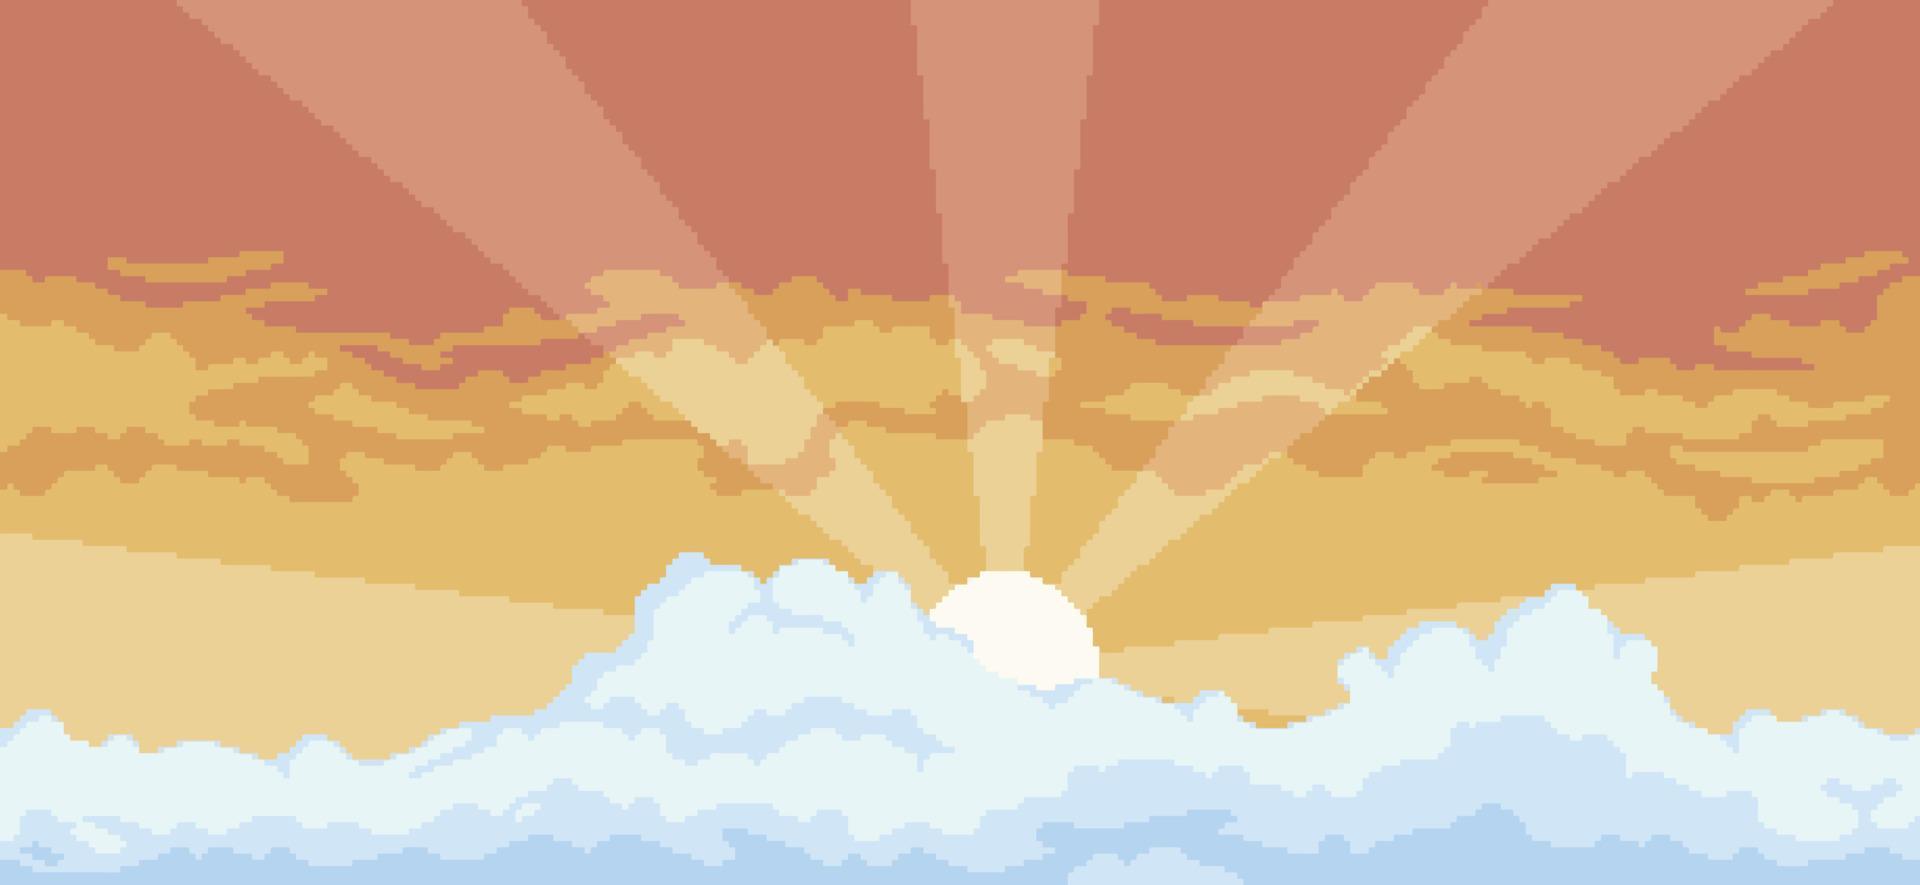 fond de coucher de soleil pixel art avec des nuages pour le jeu en 8 bits vecteur